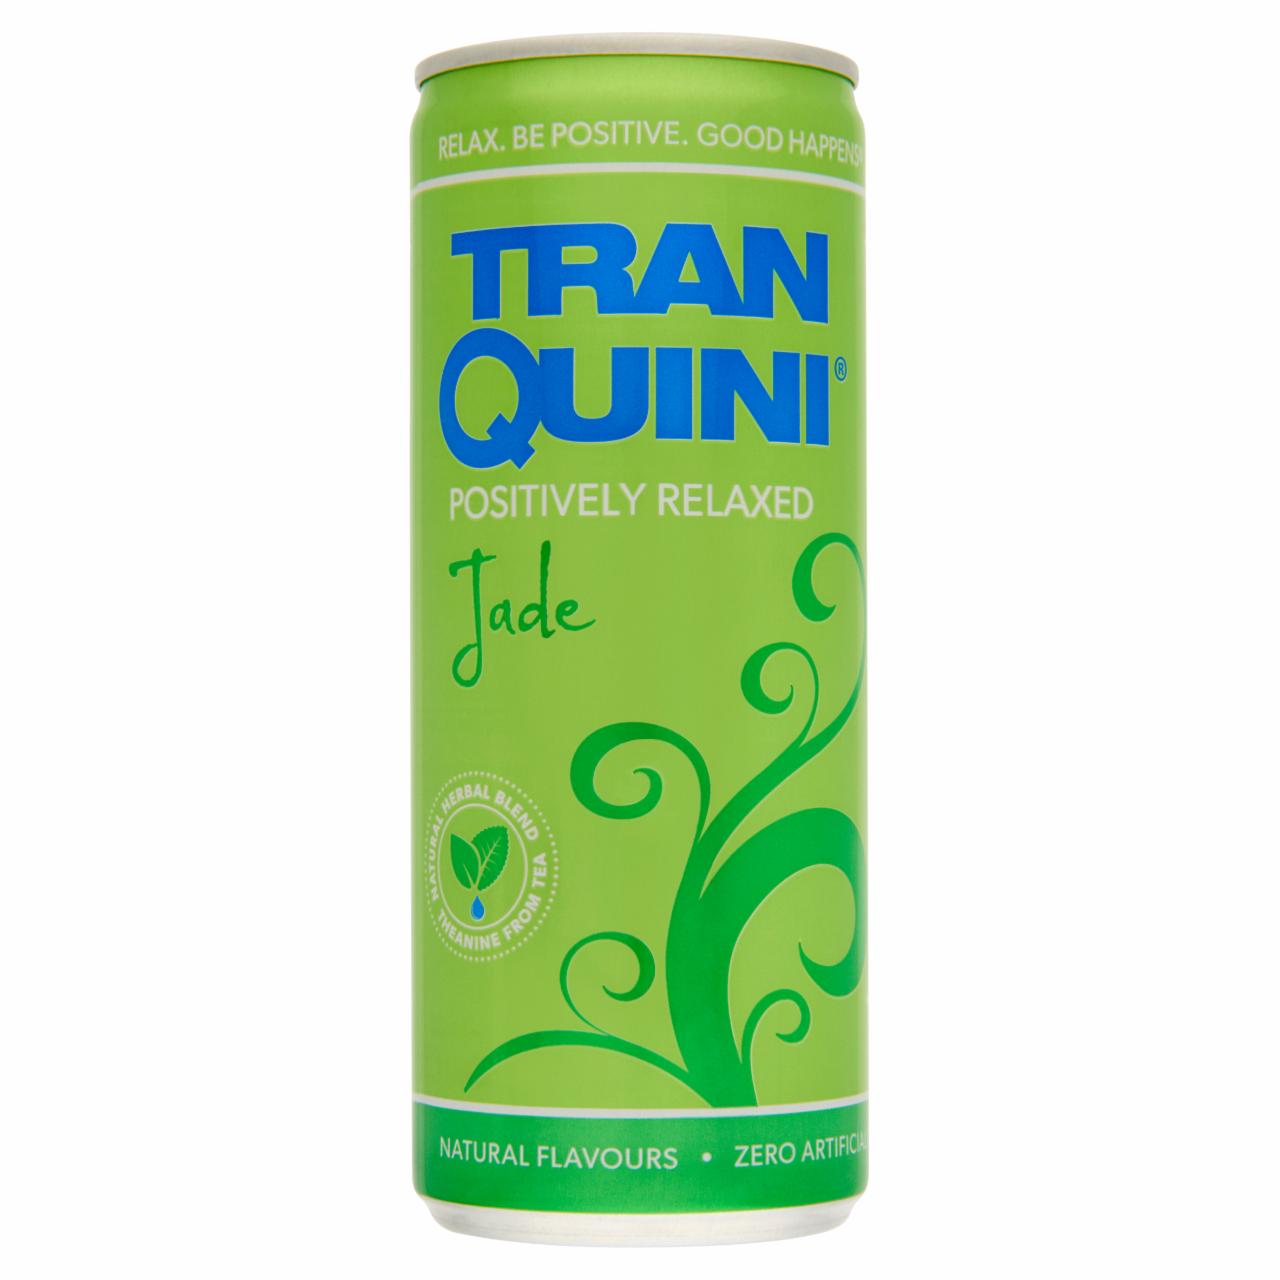 Képek - Tranquini Positively Relaxed Jade funkcionális üdítőital 250 ml